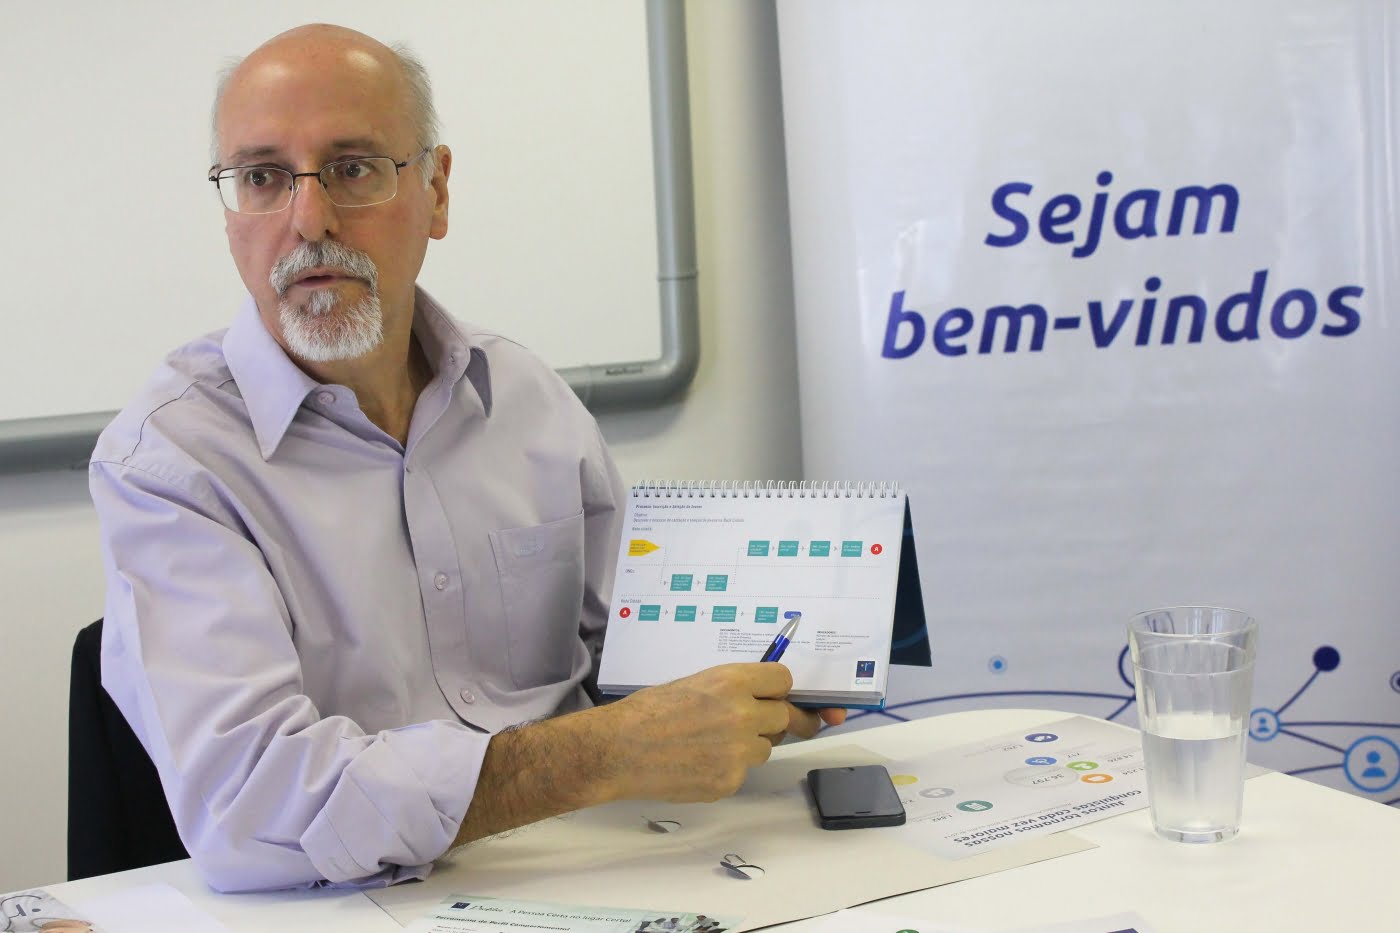 Fernando Alves apresenta a metodologia da Rede Cidadã: "É preciso entregar resultados".